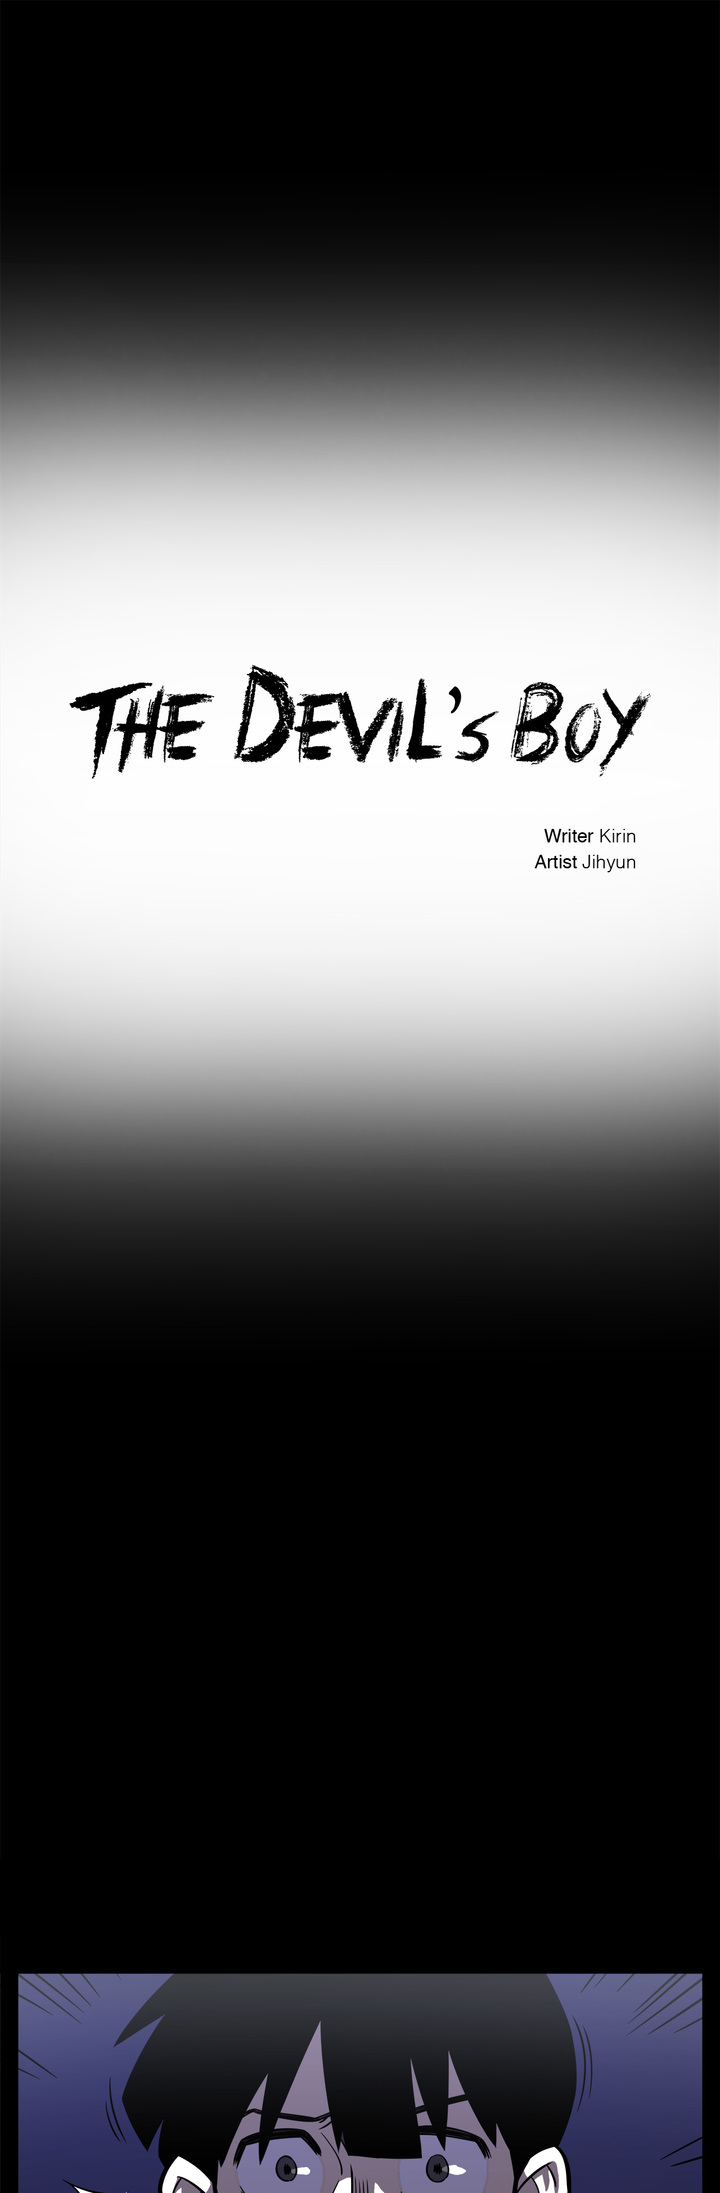 The Devil’s Boy image